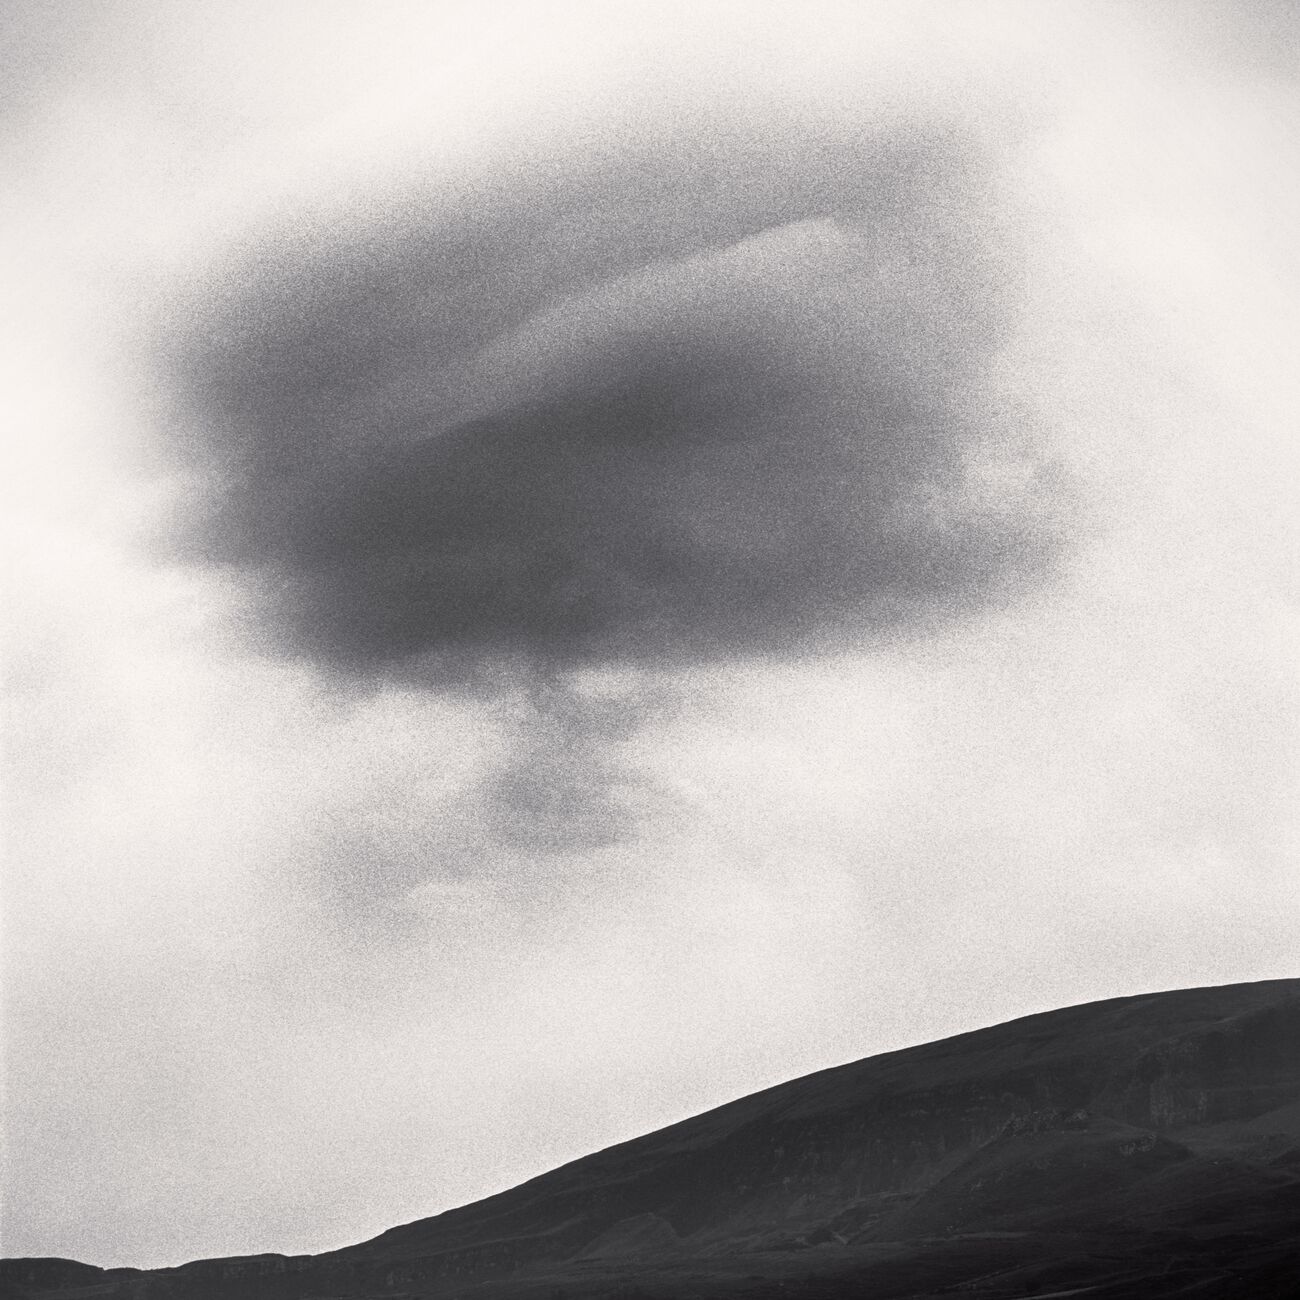 Dark Cloud, Staffin Coast, Scotland. August 2022. Ref-11575 - Denis Olivier Art Photography